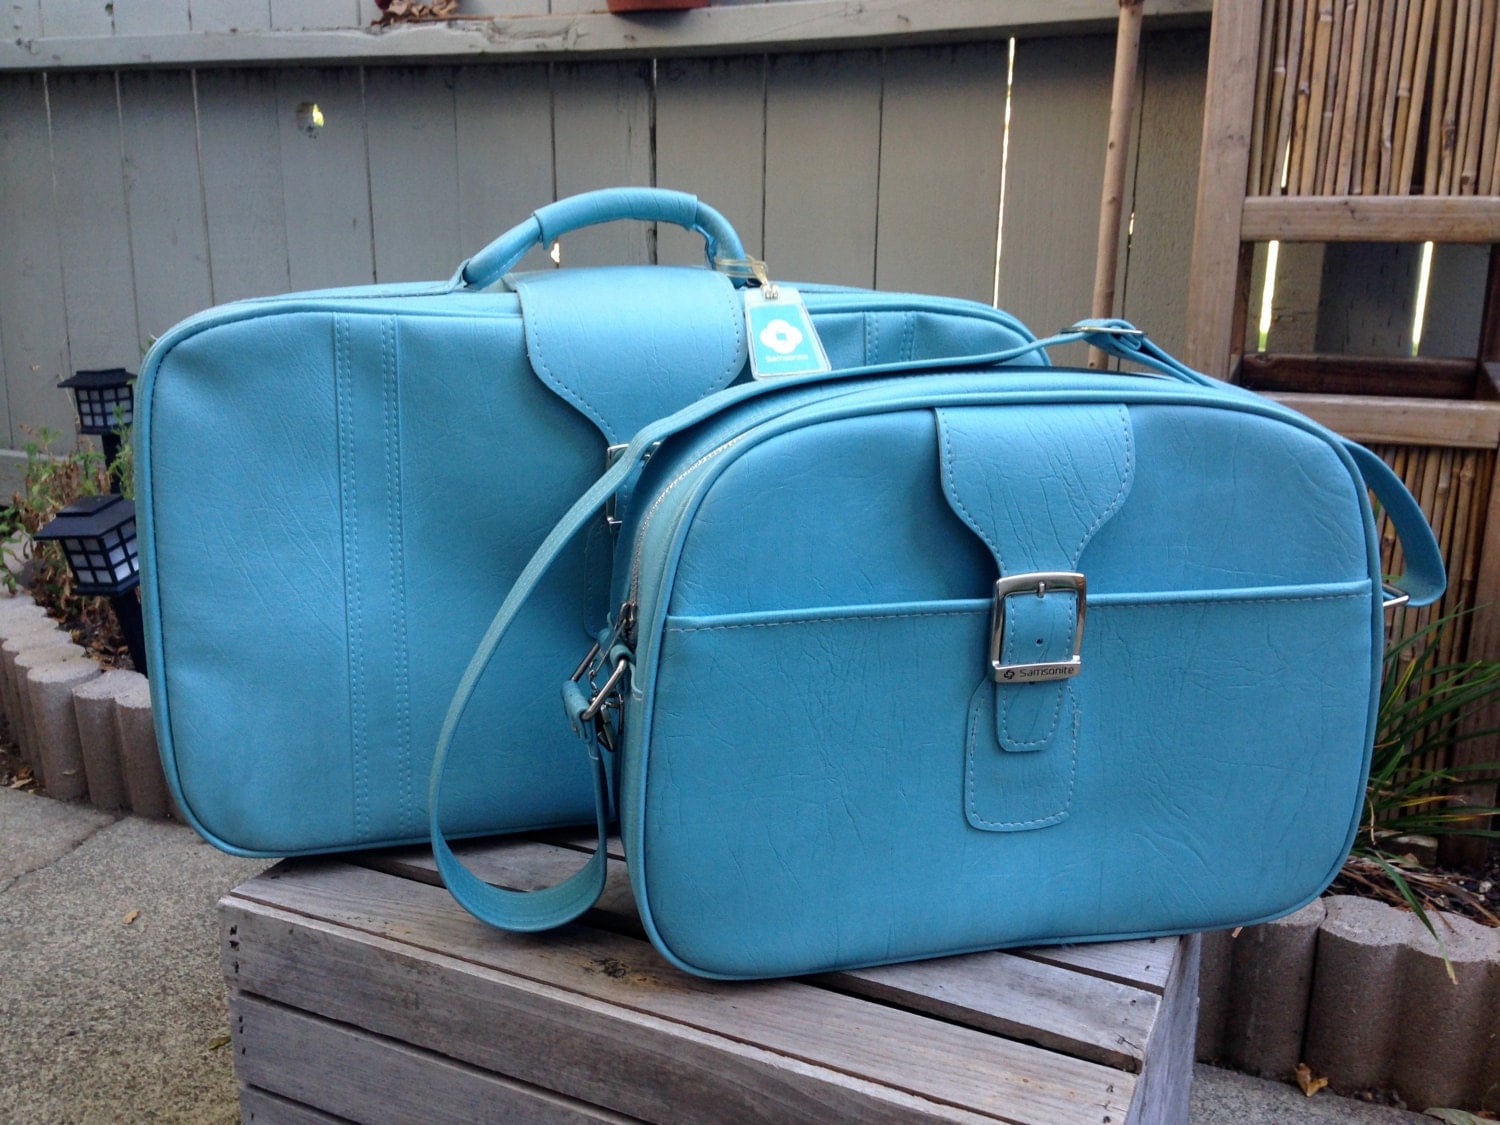 Vintage Luggage Set Turquoise Blue Samsonite Sidekick Carry On